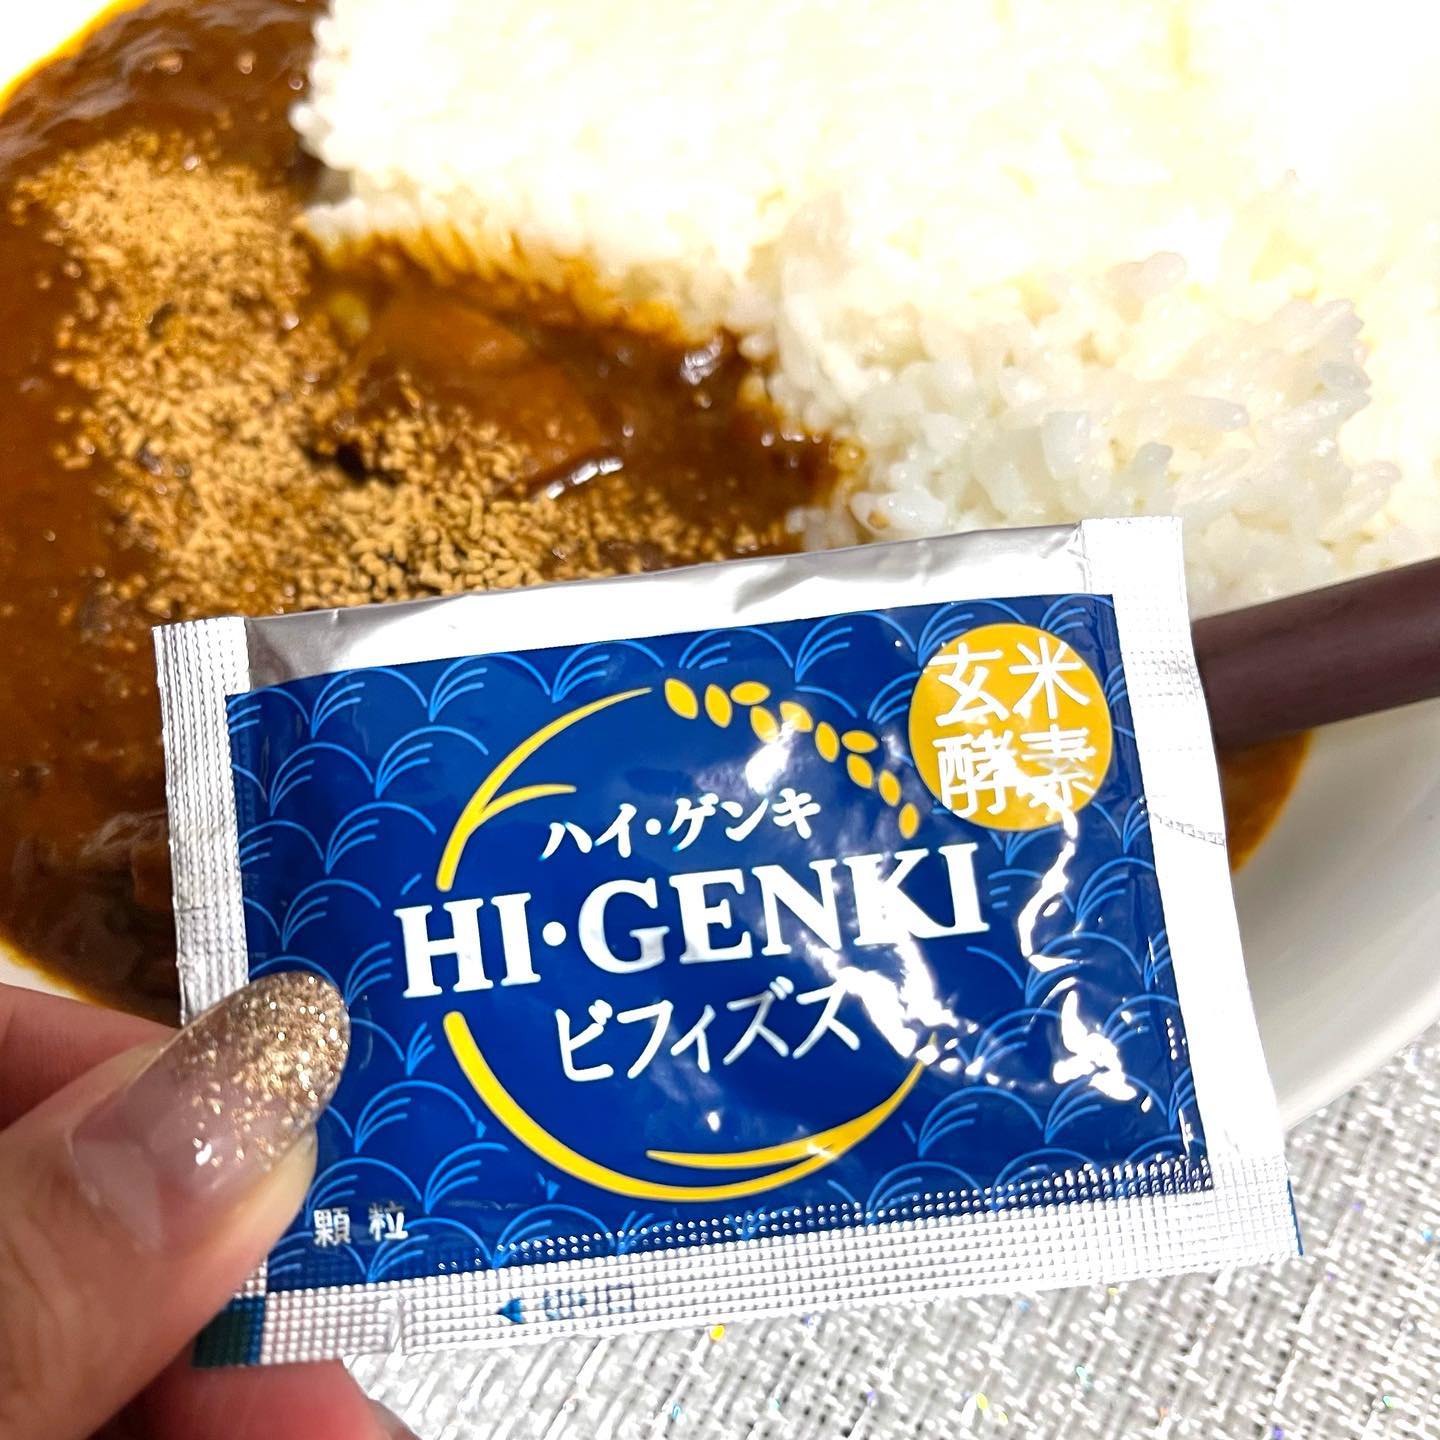 口コミ投稿：⭐️@genmaikoso_official 様の「玄米酵素ハイ・ゲンキ ビフィズス」をお試ししました😋…